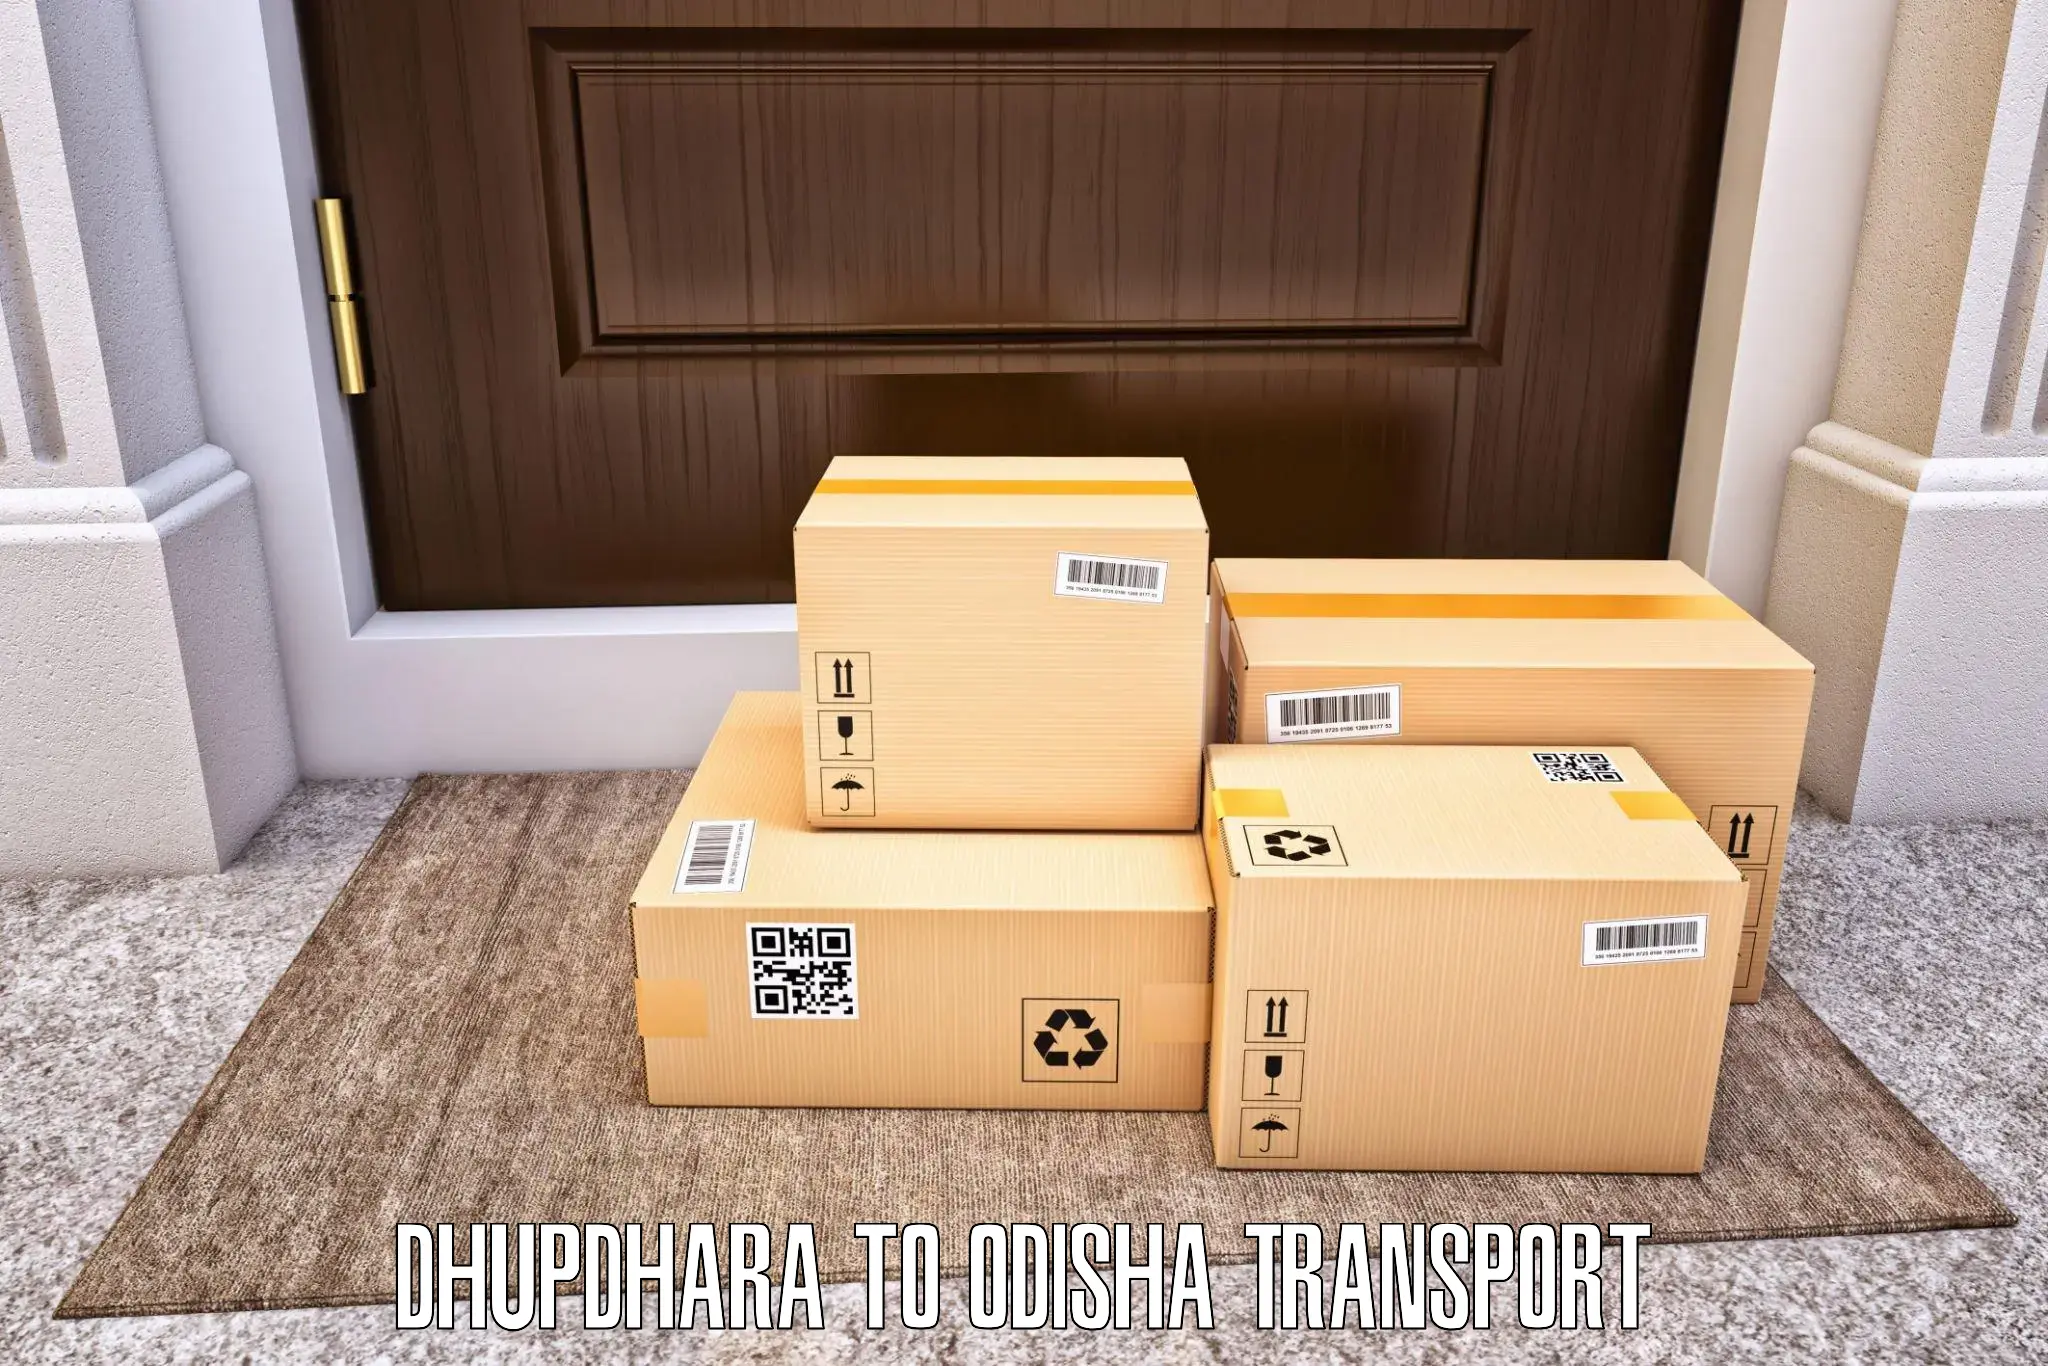 Vehicle transport services Dhupdhara to Ukhunda